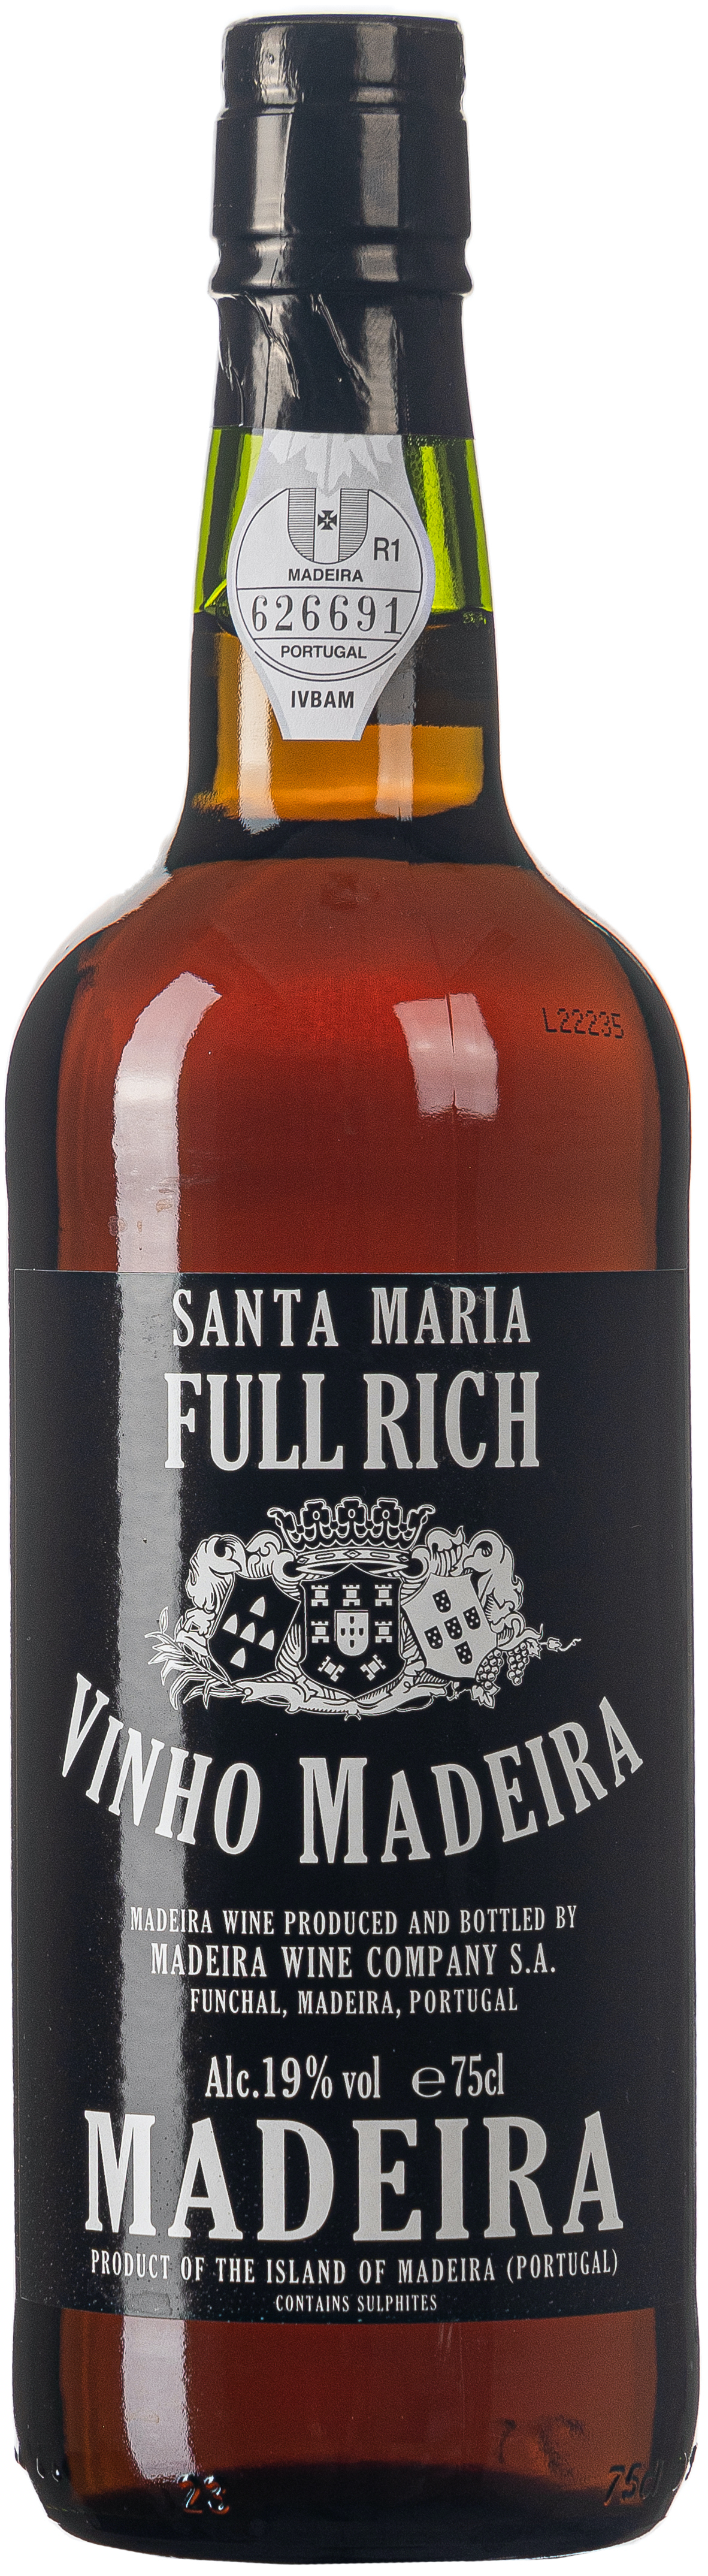 Santa Maria Vinho Madeira 19% vol. 0,75L 